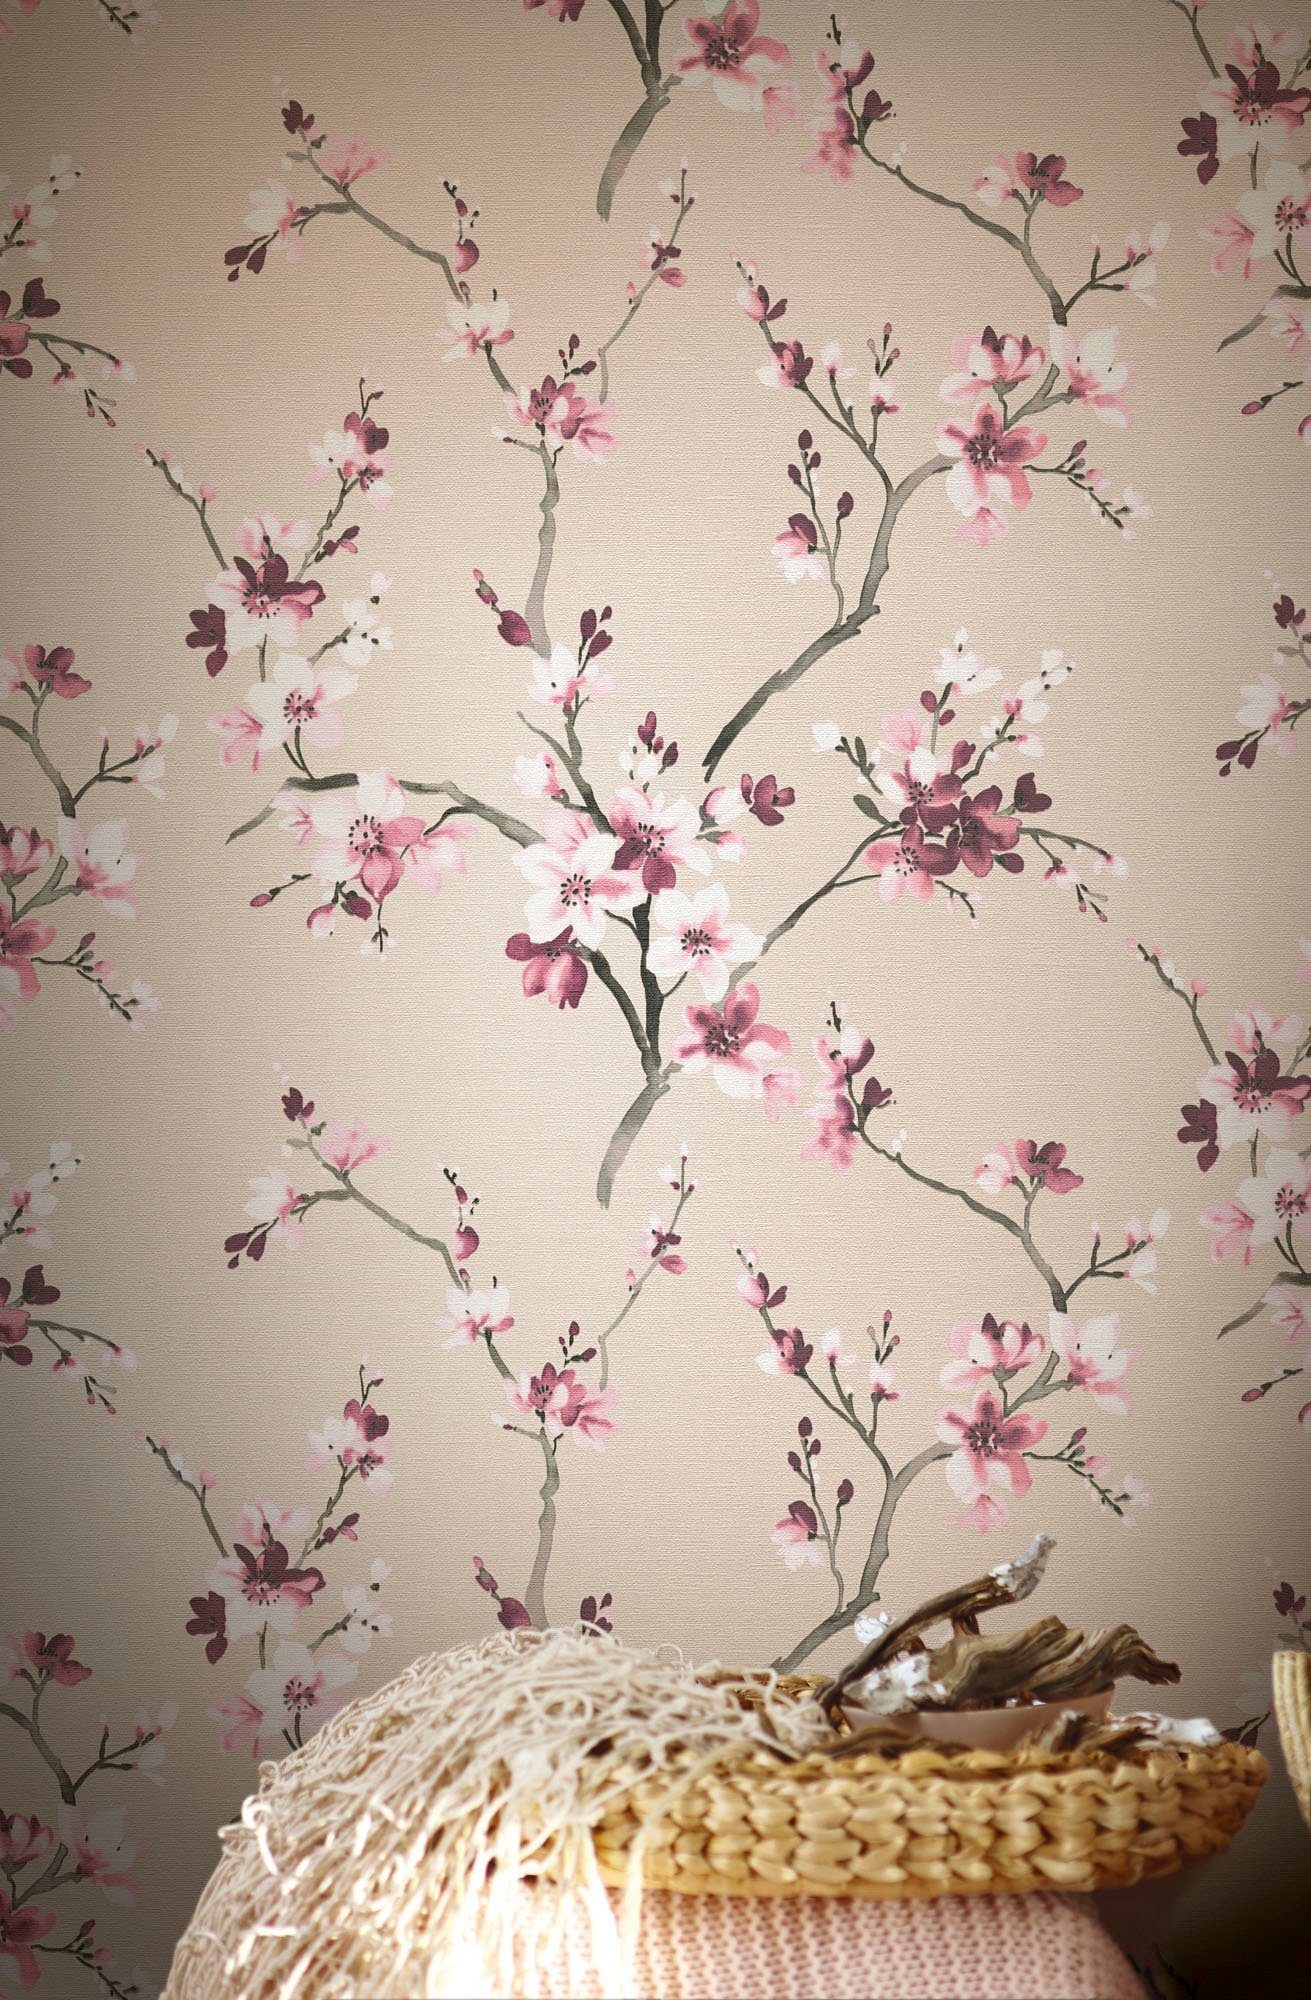 living walls Vliestapete floral, geblümt, Blumenoptik Tapete natürlich, strukturiert, Desert rosa/beige Lodge